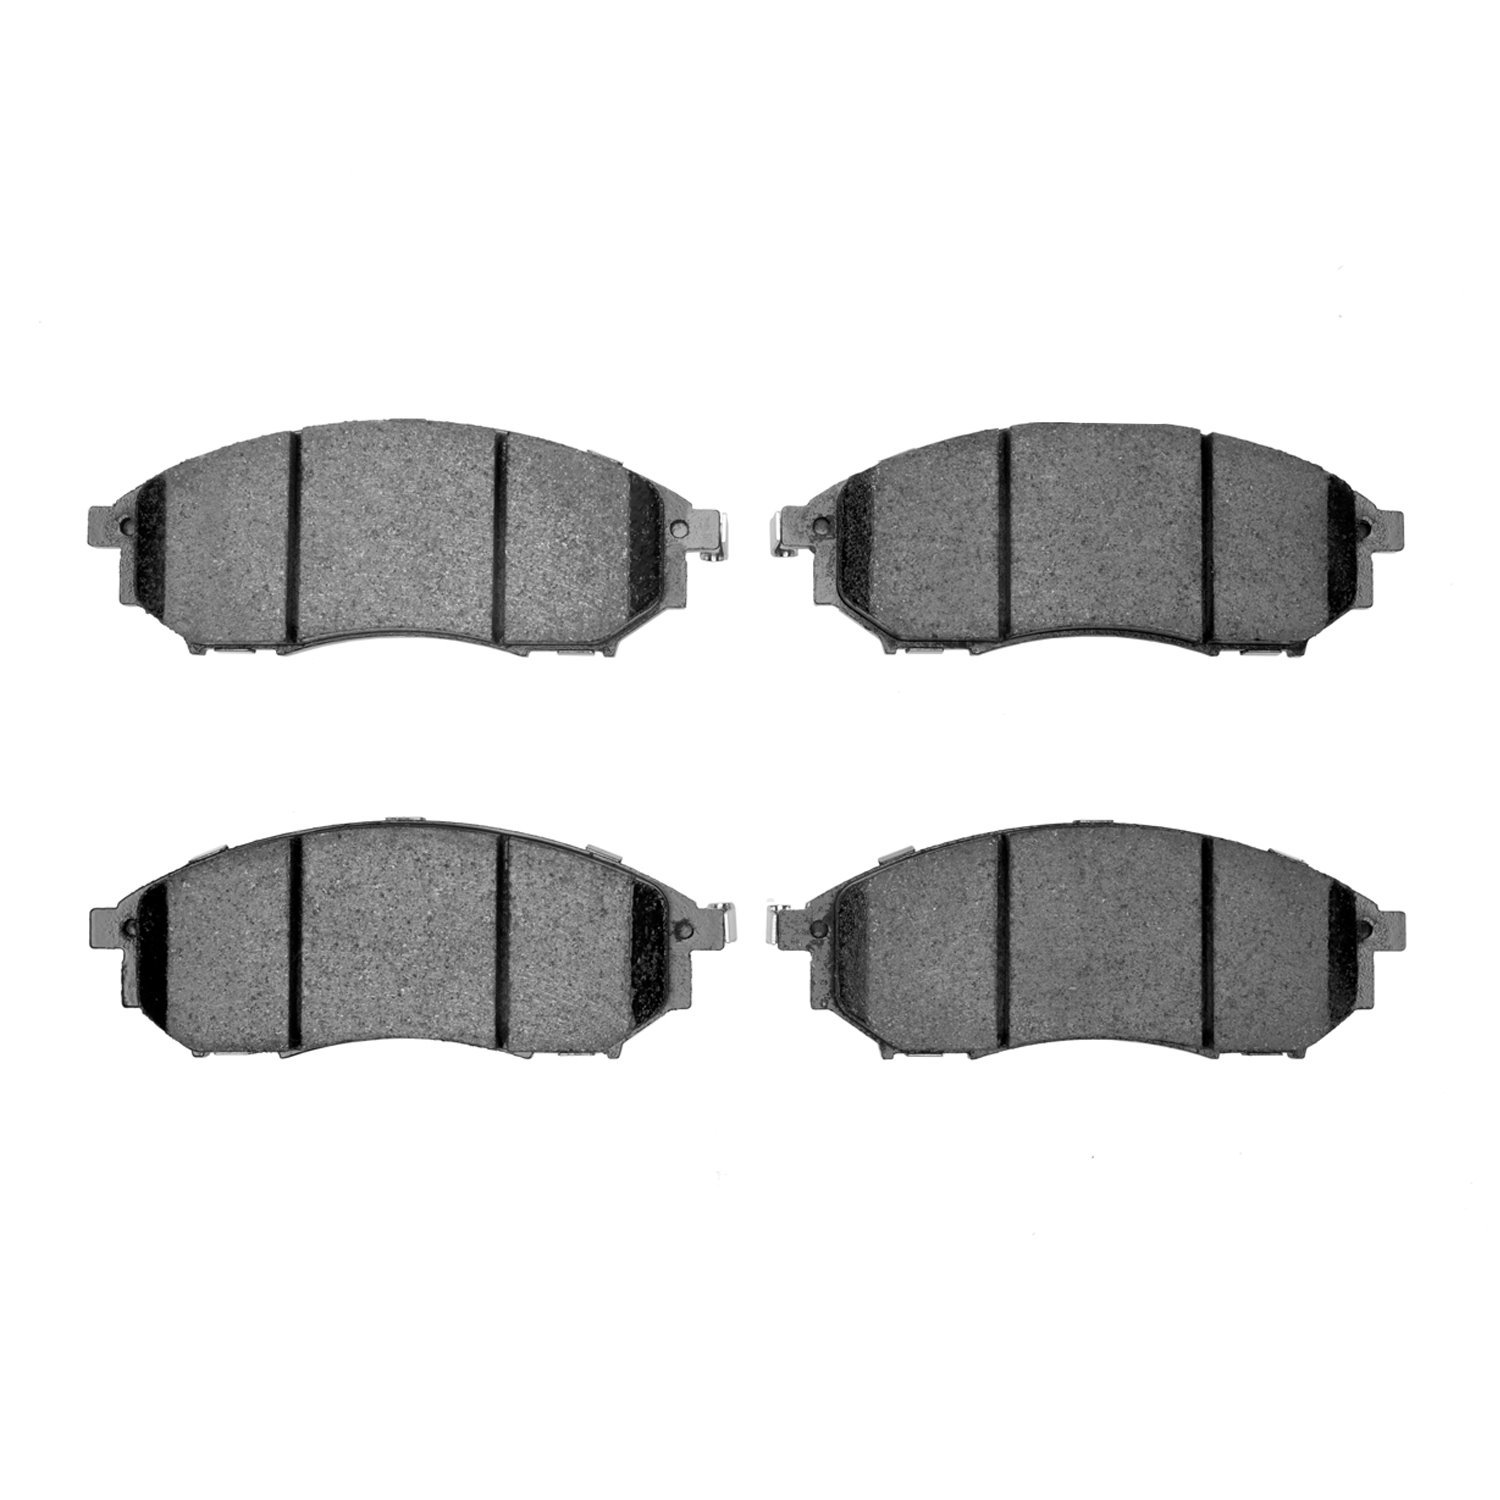 Ceramic Brake Pads, 2002-2020 Fits Multiple Makes/Models, Position: Front